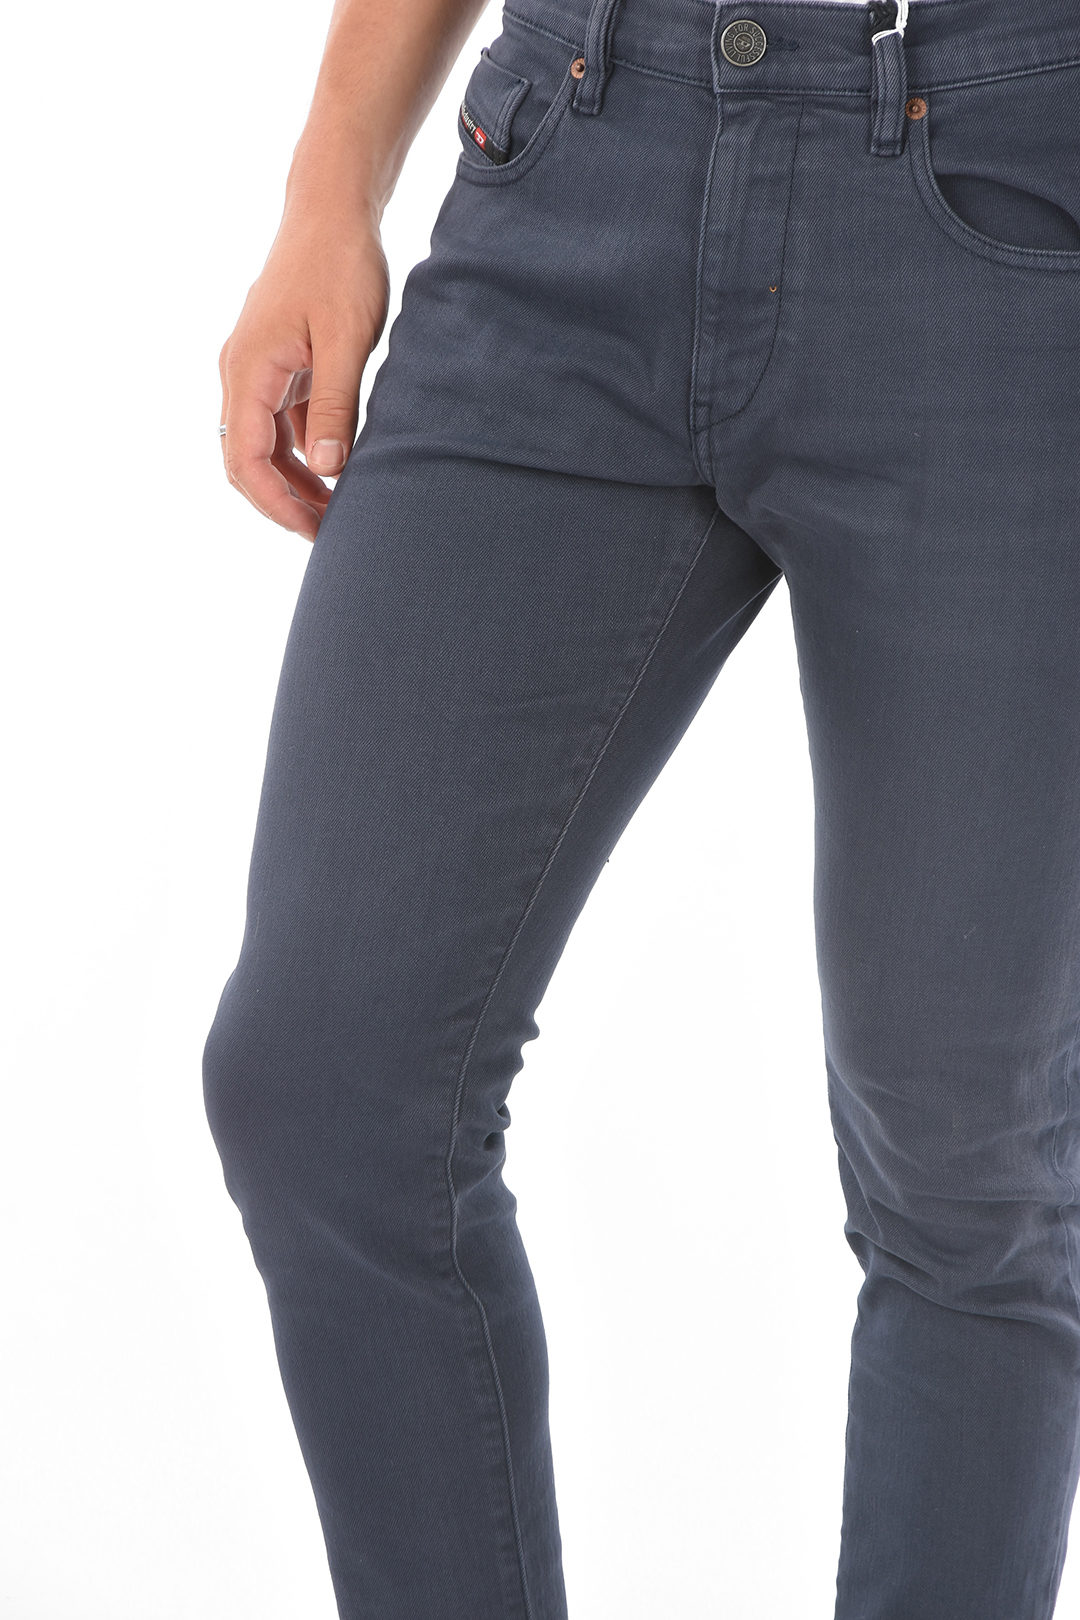 rim Slander Lean Diesel 16cm 5 Pockets D-STRUK Slim Fit Jeans L30 men - Glamood Outlet